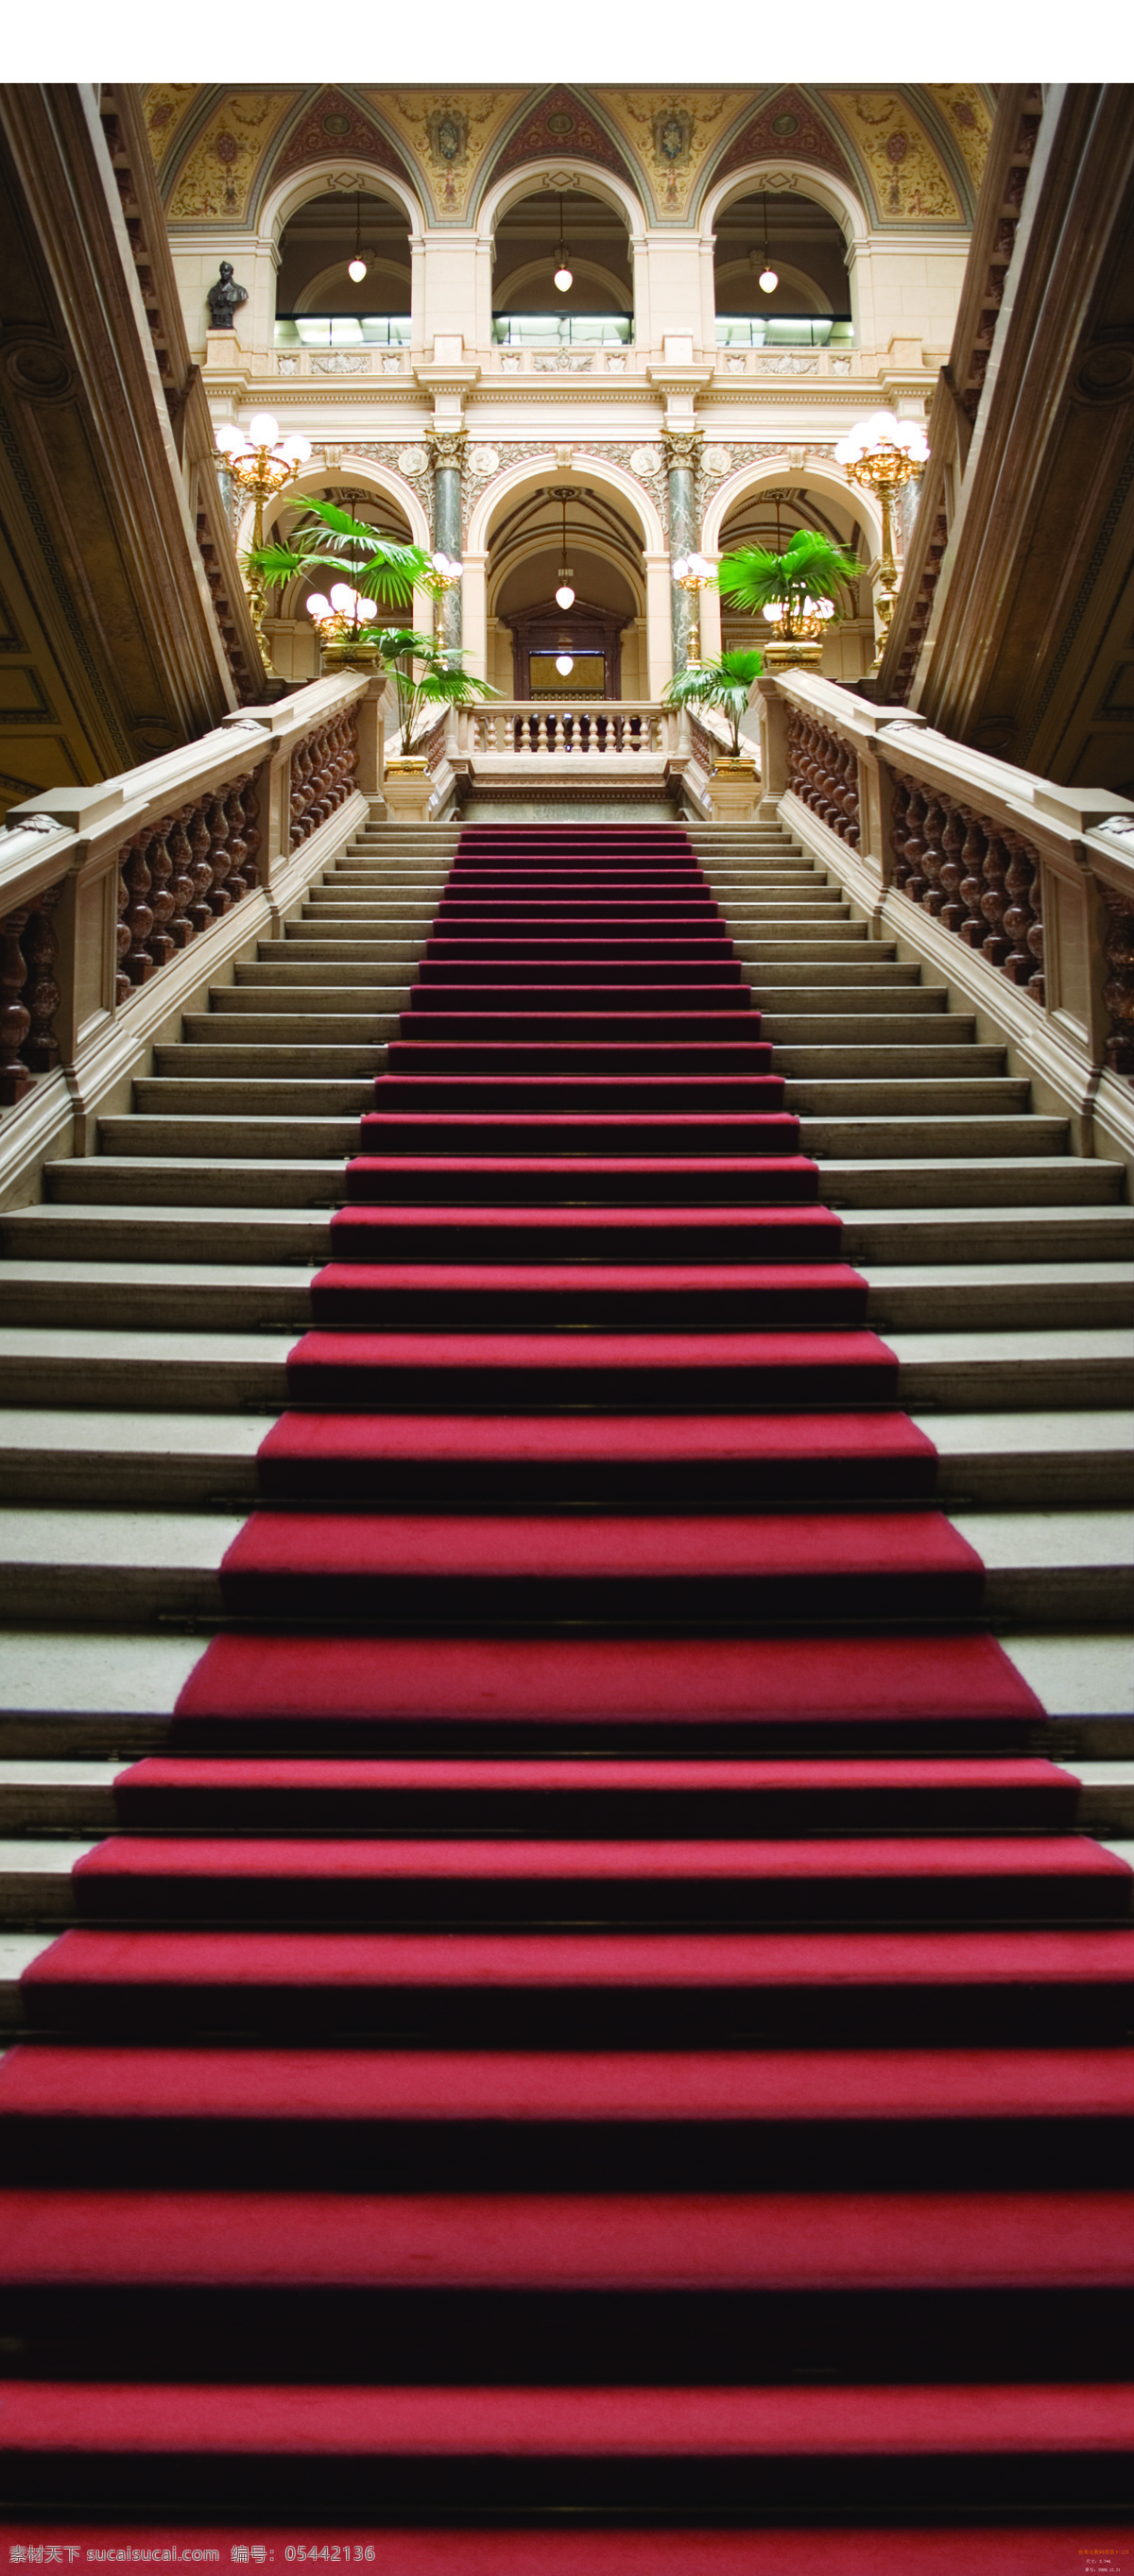 红地毯大教堂 红地毯 教堂 室内 建筑 宫殿 黑色